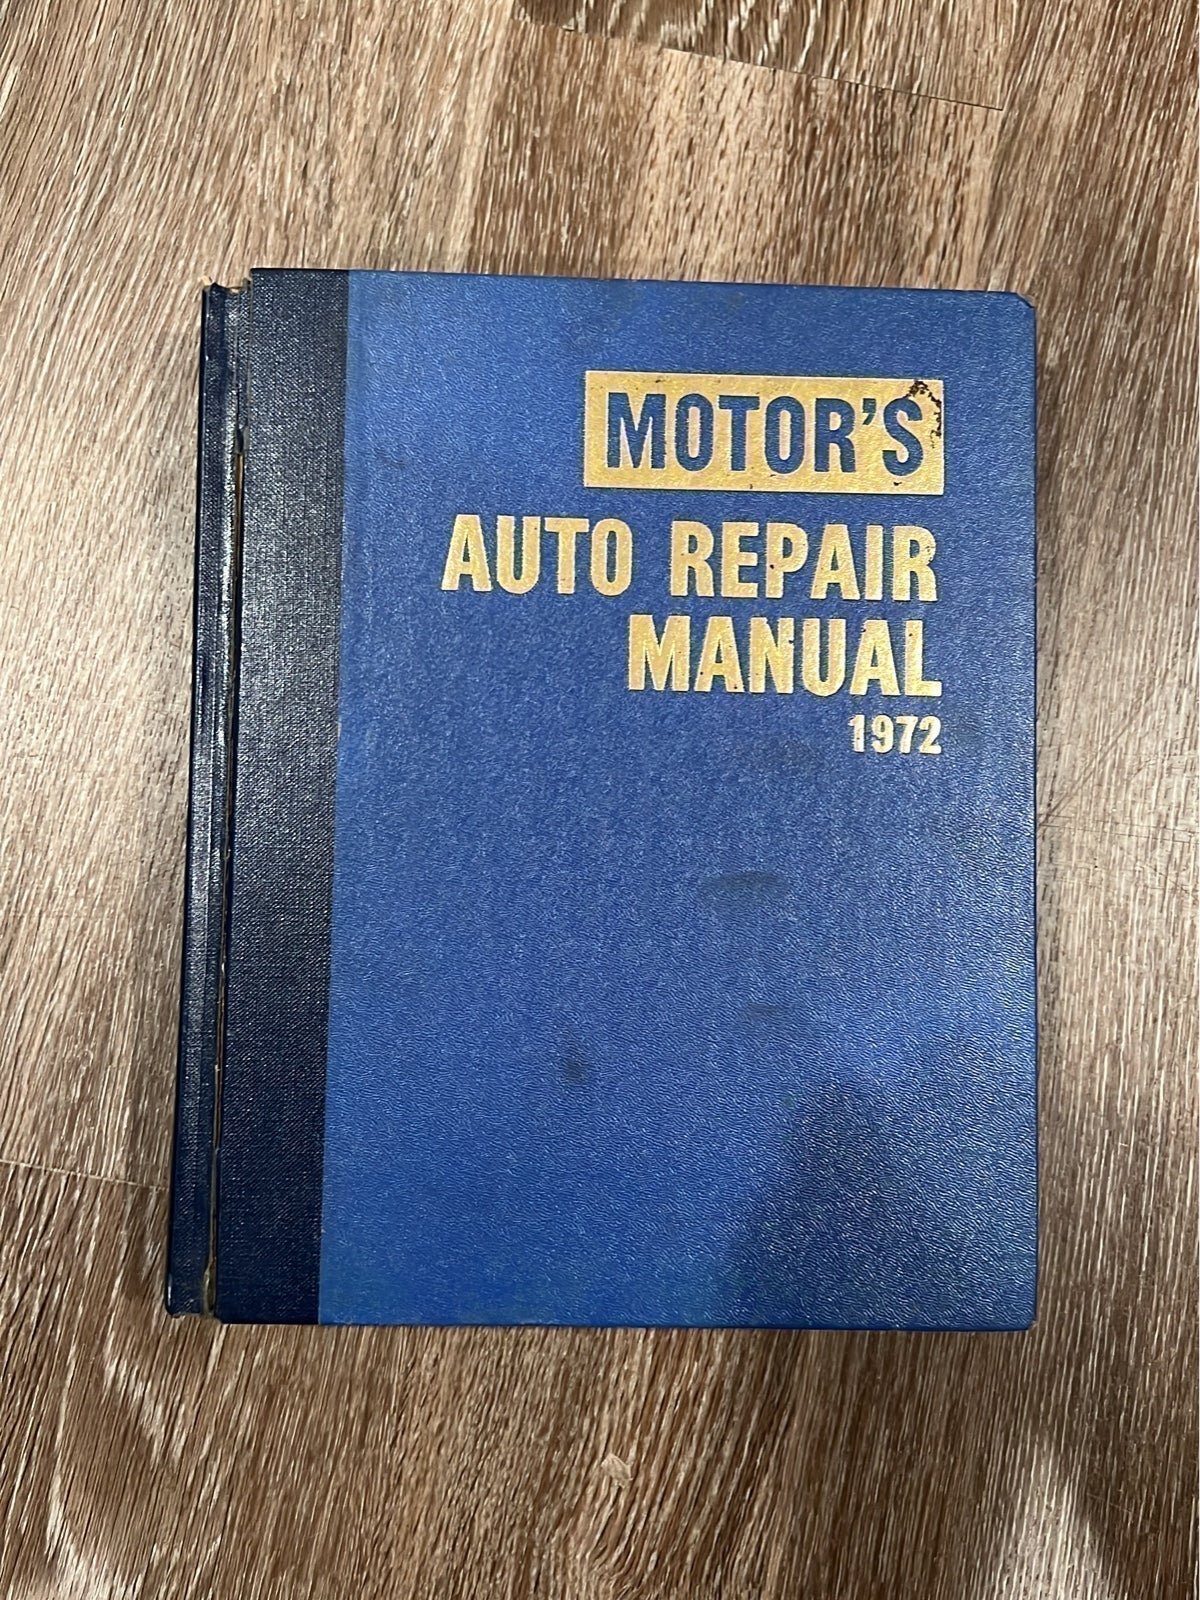 Motor’s Auto repair manual 1972 93RmTCvhY